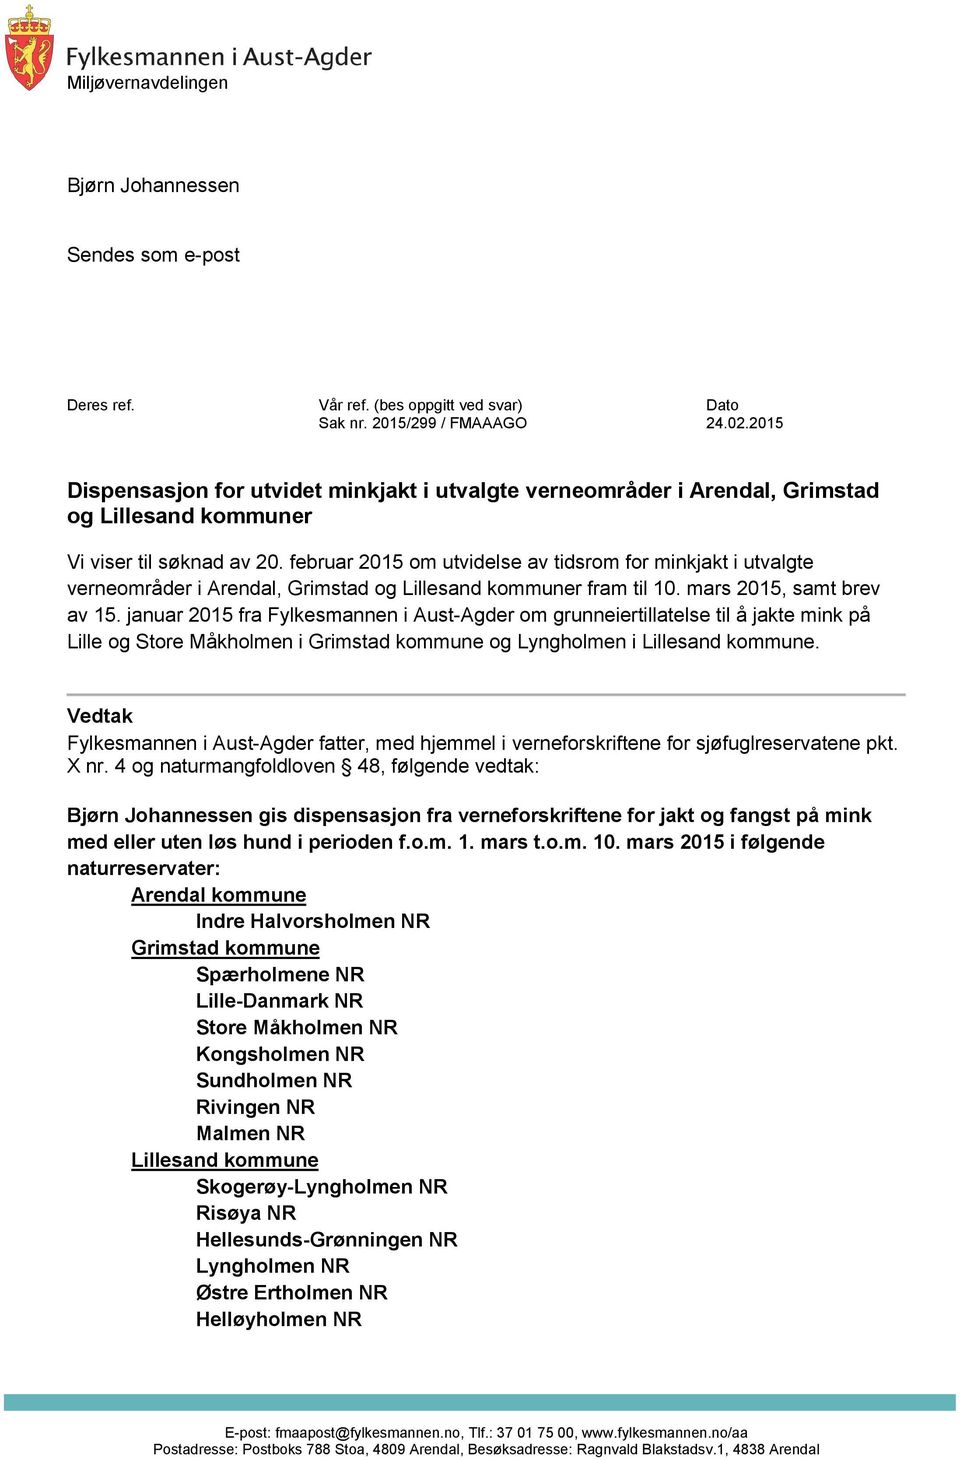 februar 2015 om utvidelse av tidsrom for minkjakt i utvalgte verneområder i Arendal, Grimstad og r fram til 10. mars 2015, samt brev av 15.